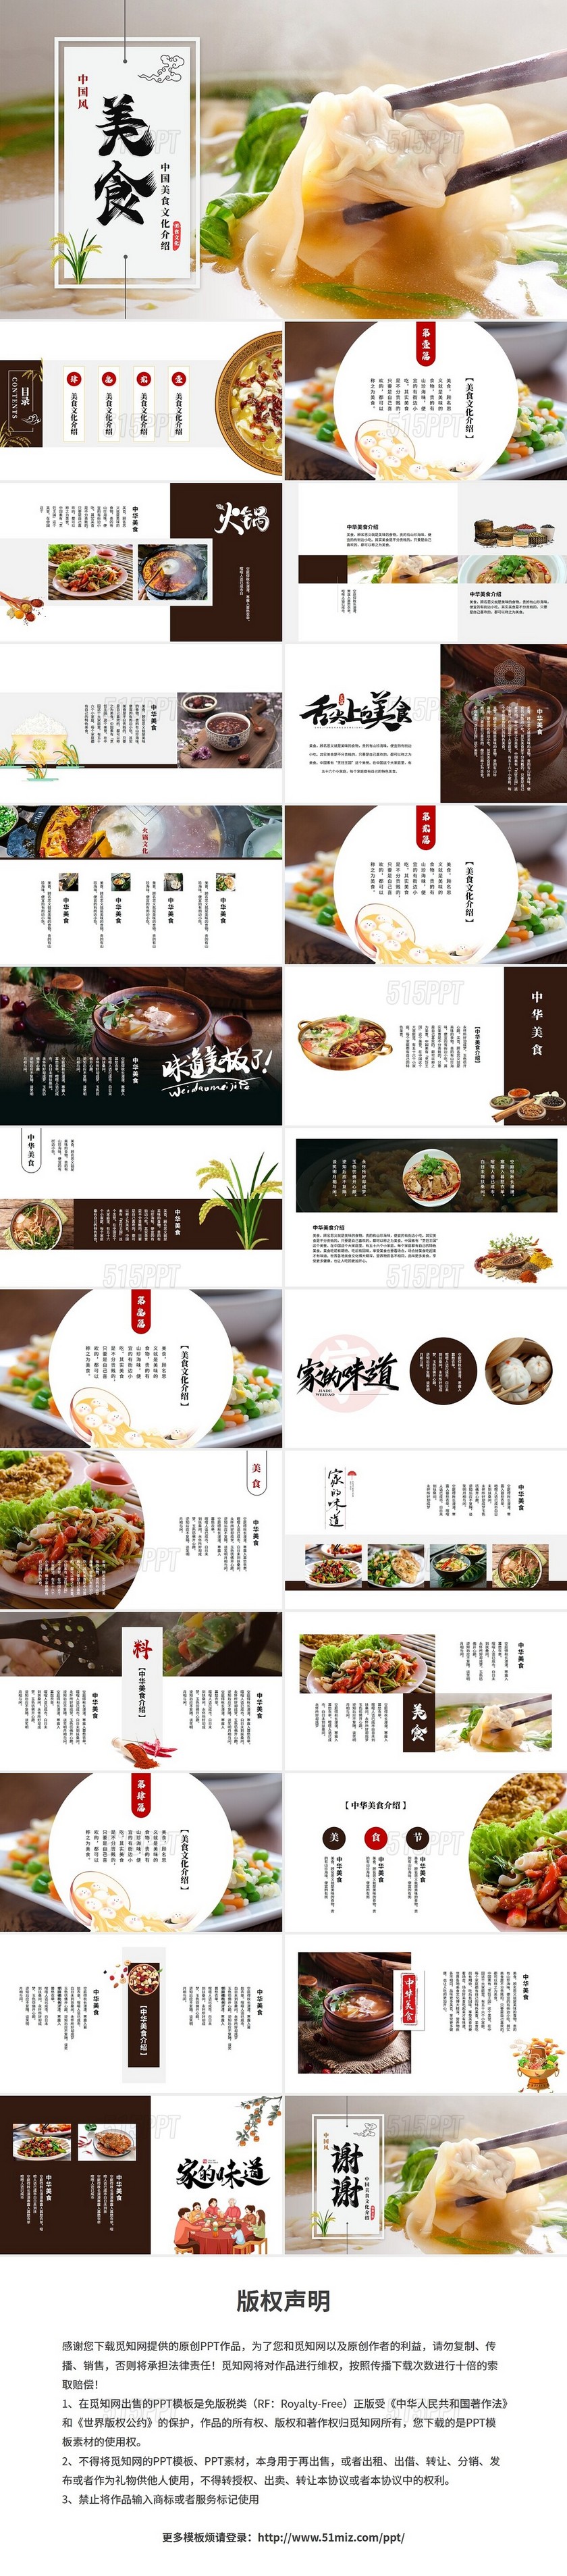 简约中国风美食文化介绍餐饮美食宣传ppt模板